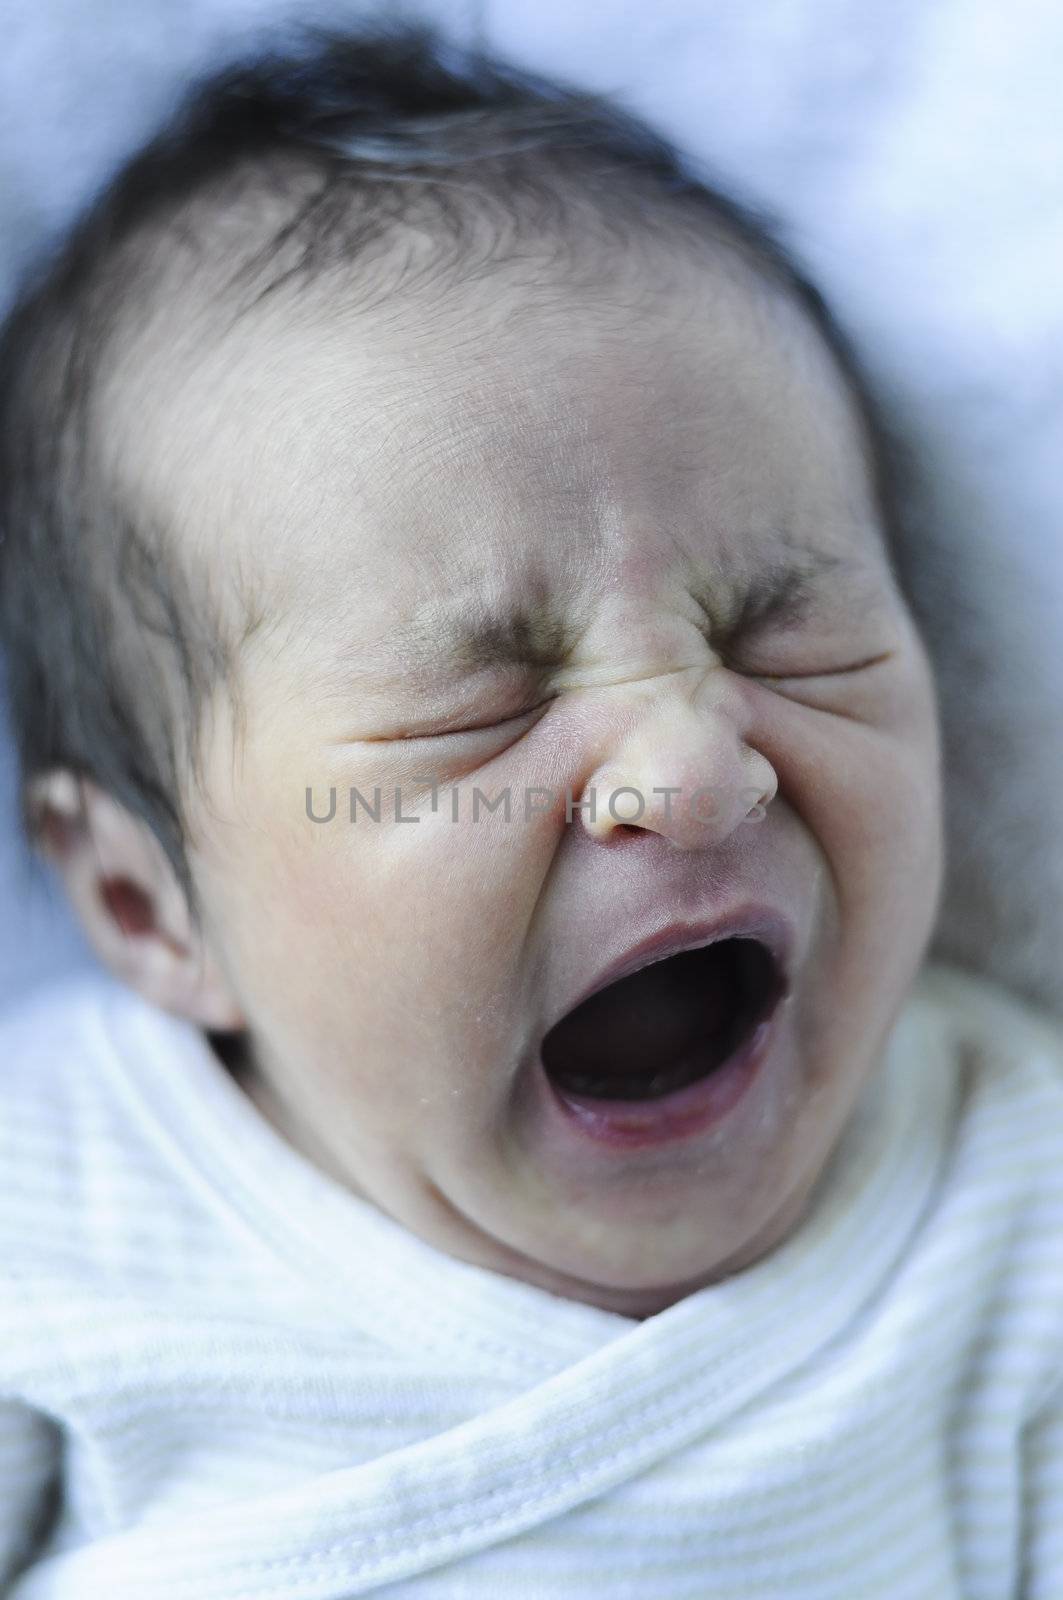 newborn baby crying by FernandoCortes